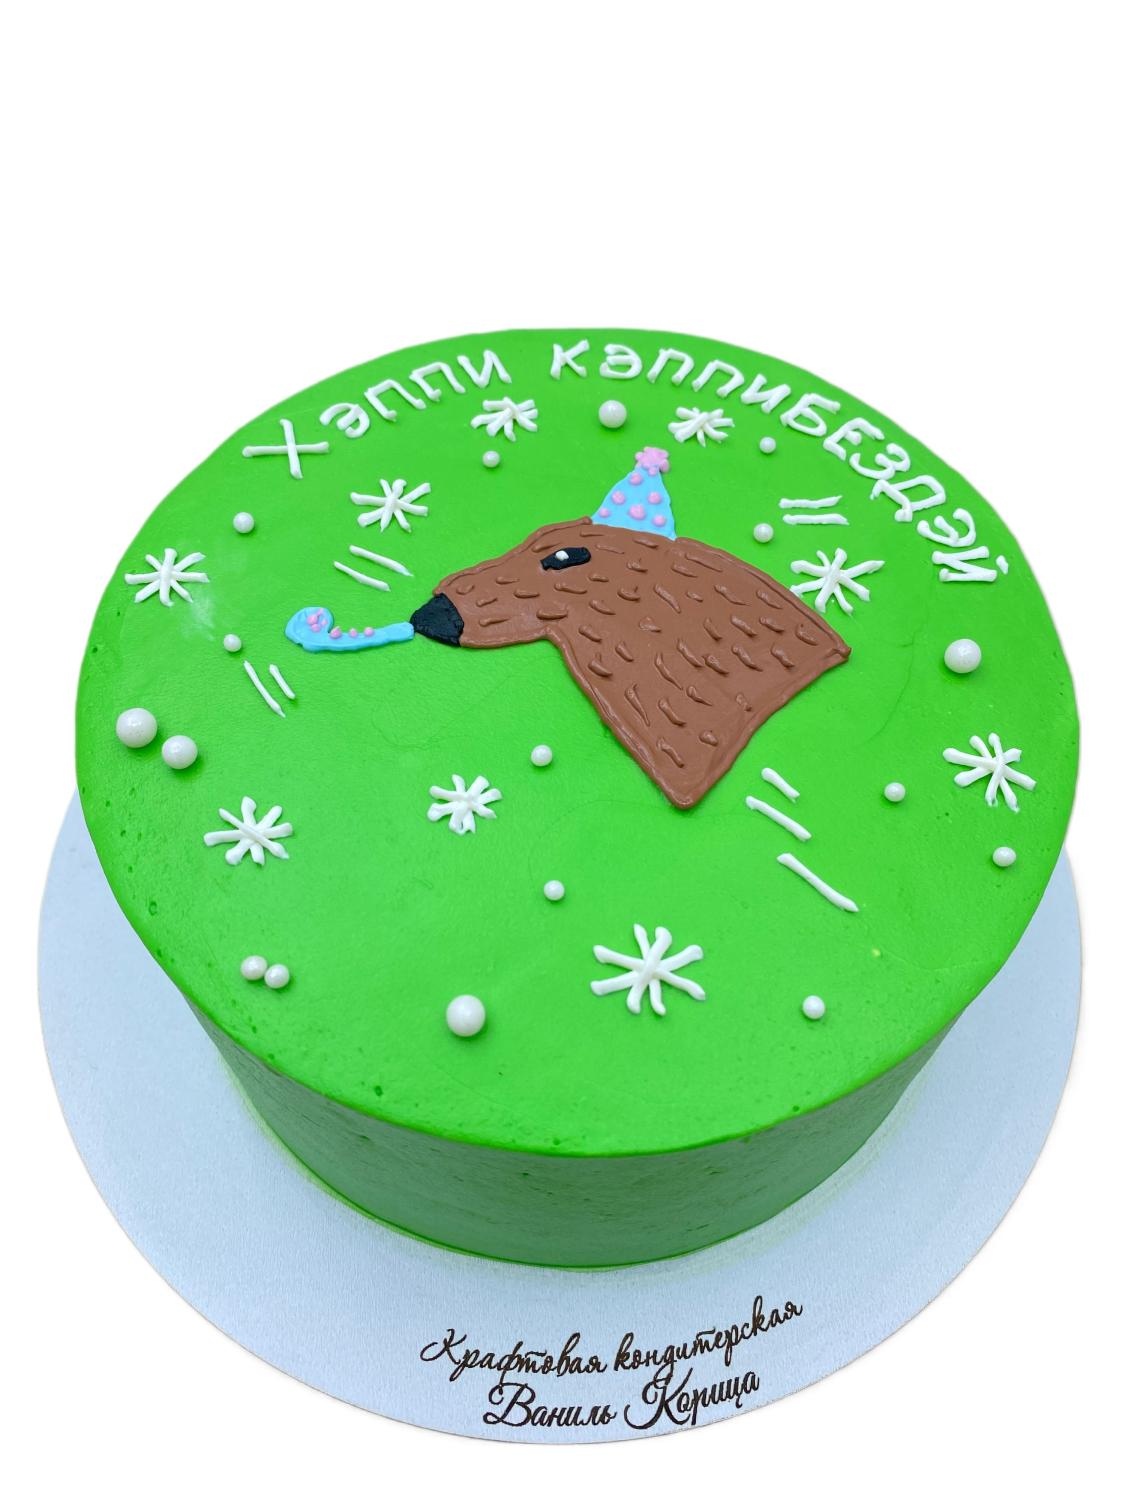 Детский торт Баунти #176 в кондитерской cake64.ru фото